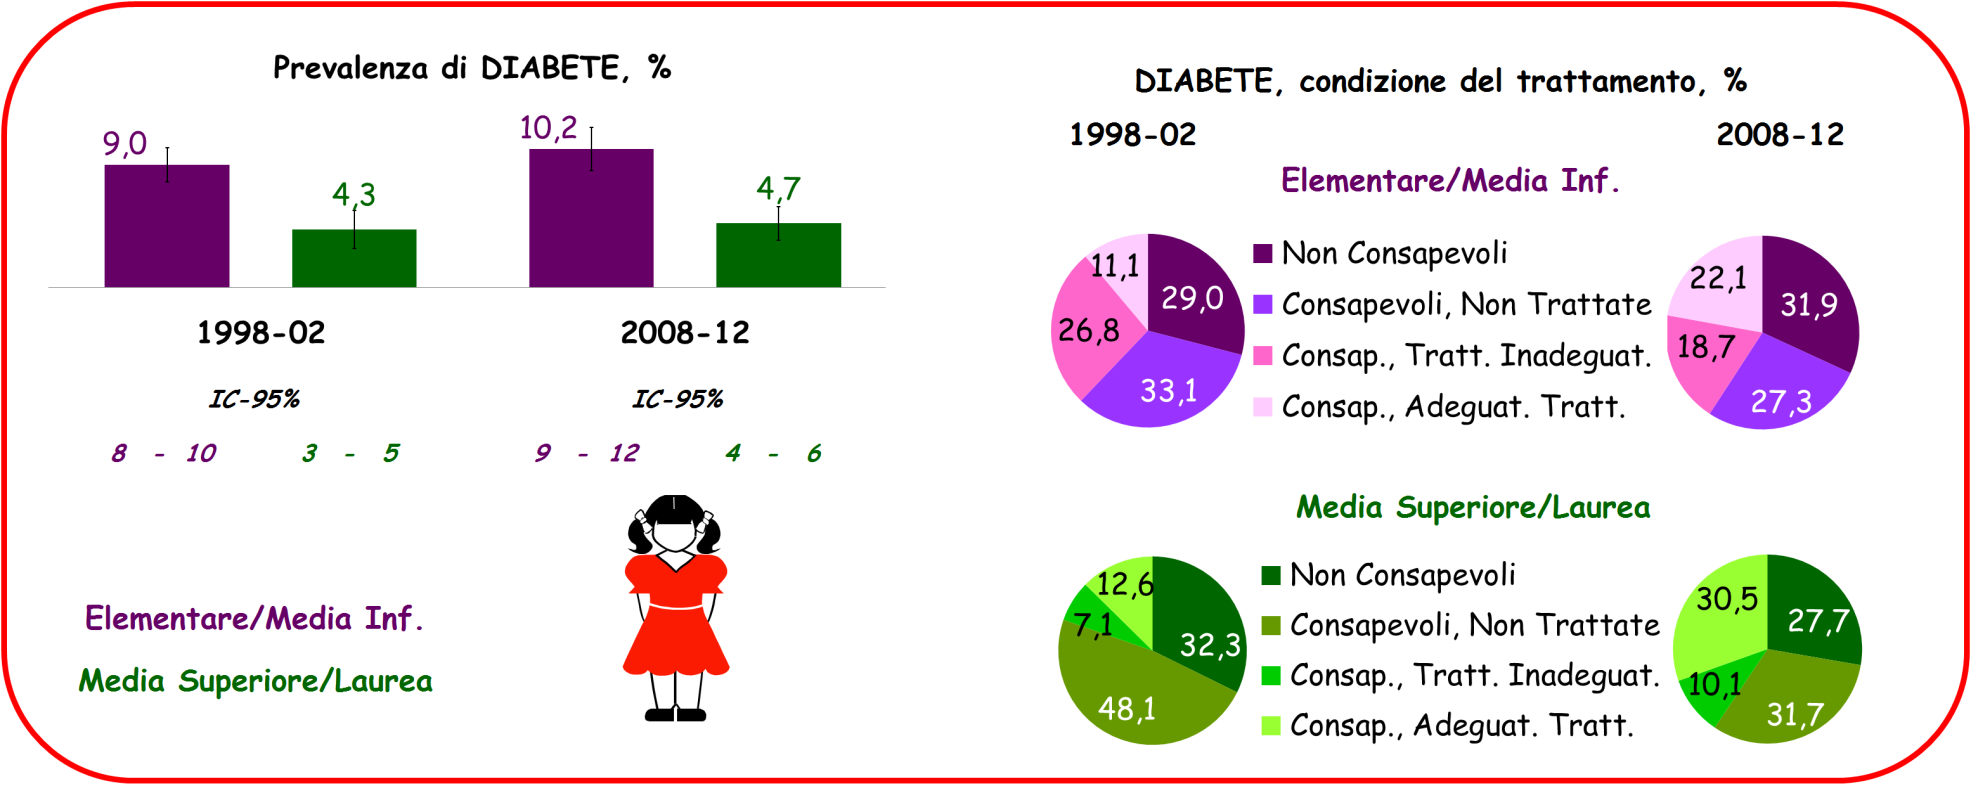 GLICEMIA e DIABETE: Confronto tra 1998-2002 e 2008-2012; Età, 35-74 anni.